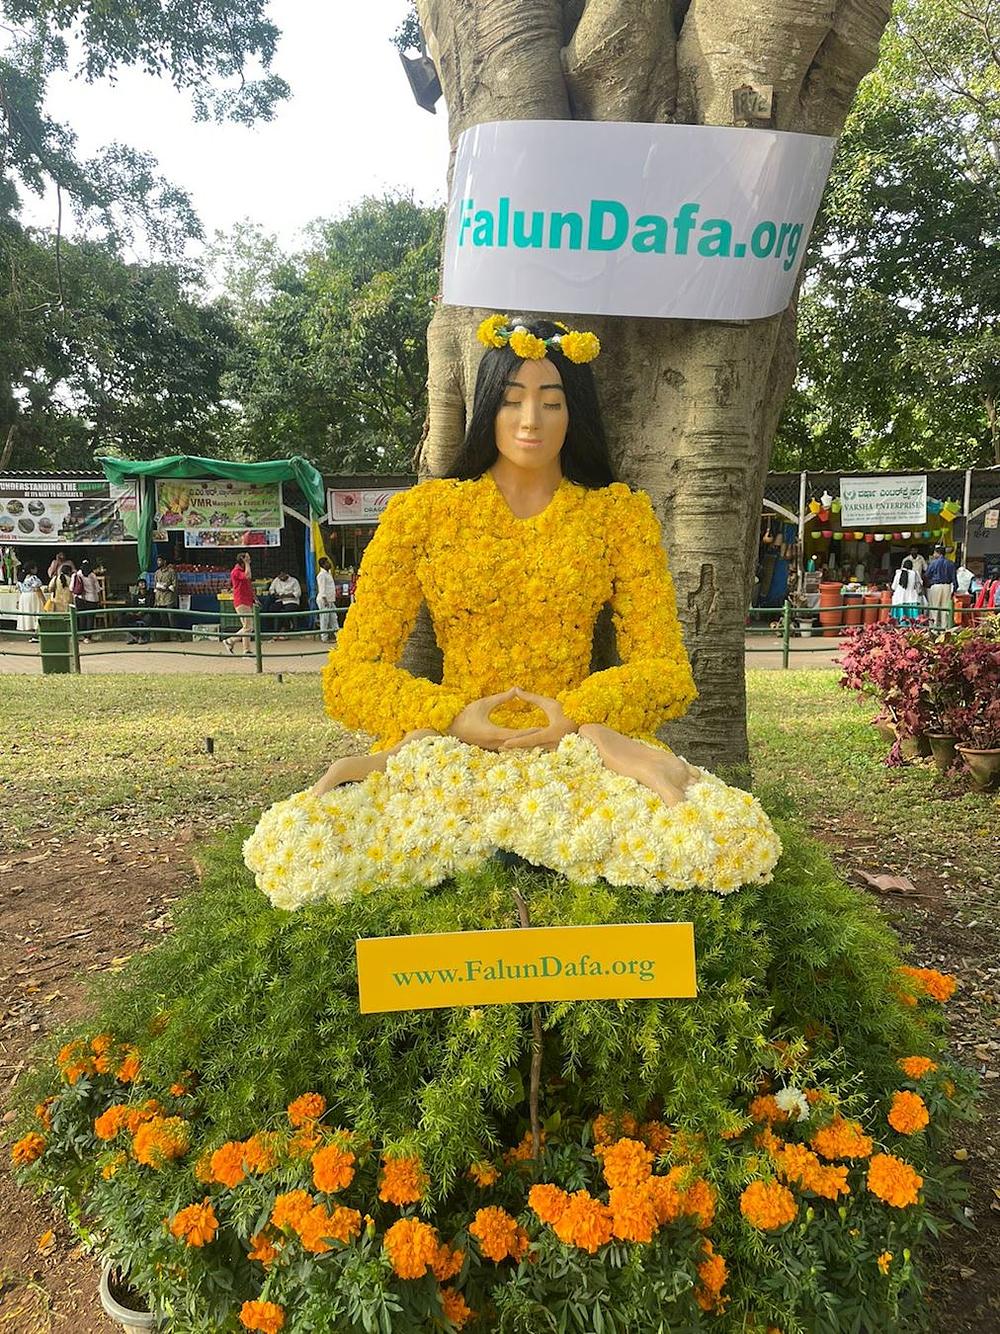  Cvjetna skulptura koju su napravili Falun Dafa praktikanti.